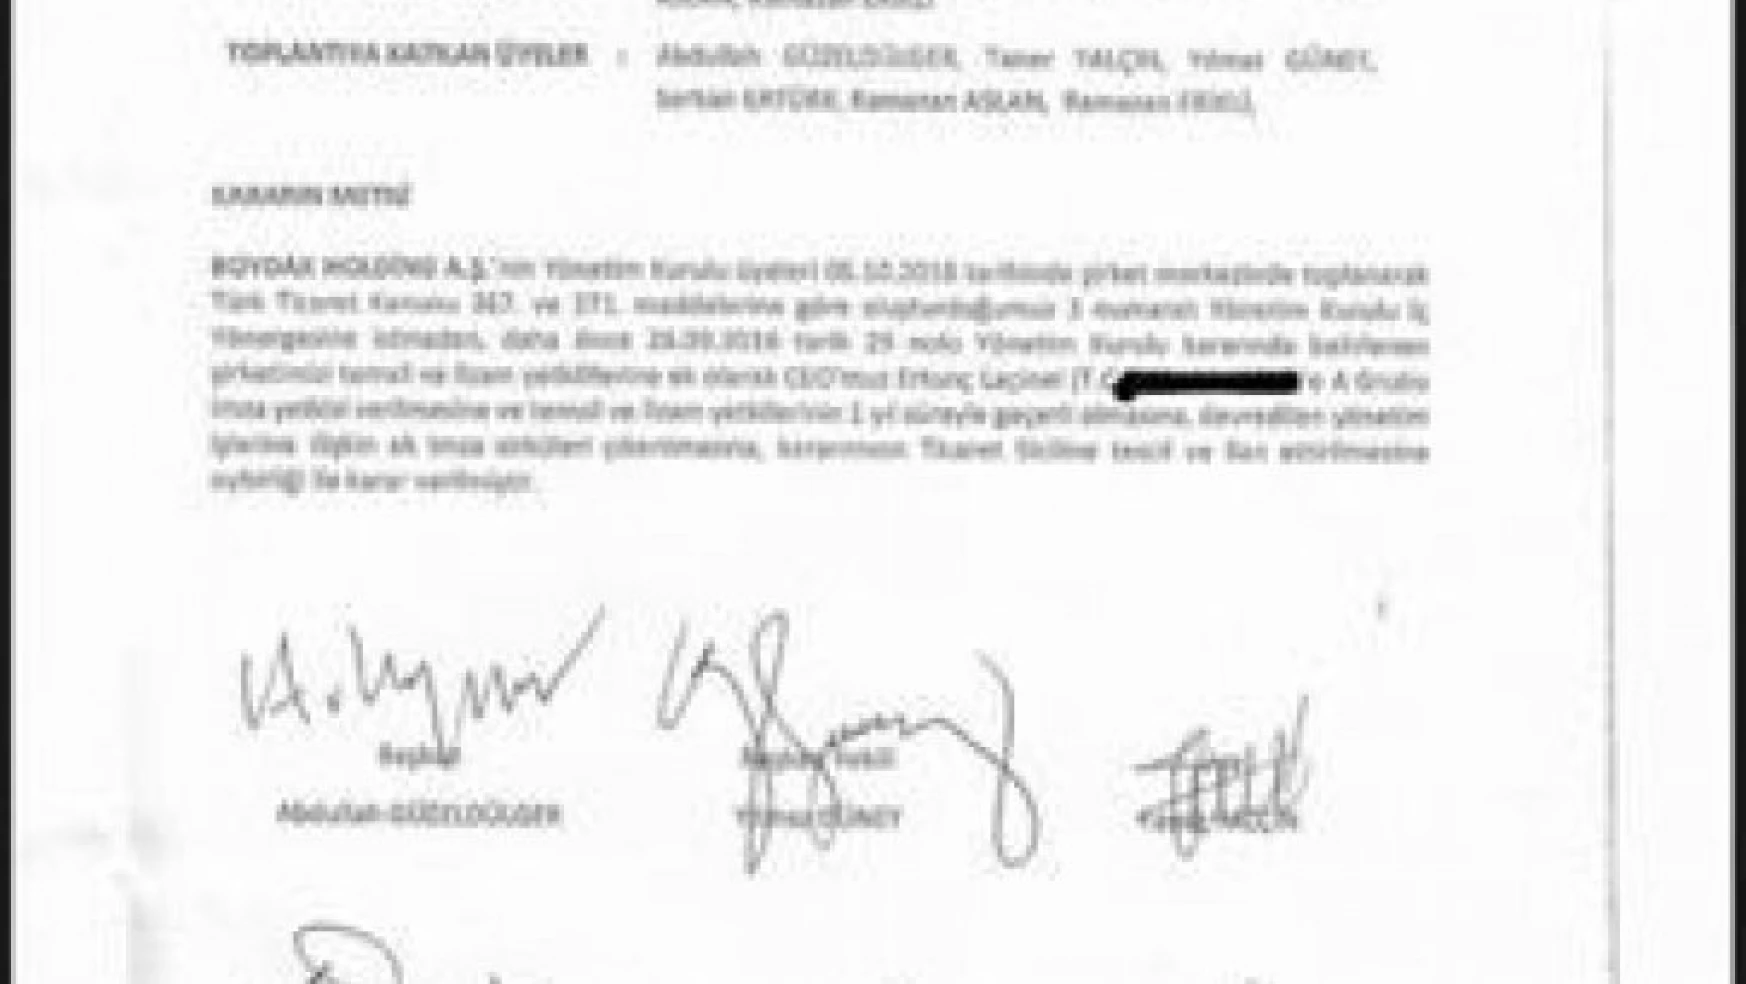 AK Partili Canikli'den CHP lideri Kılıçdaroğlu'nun iddialarına cevap